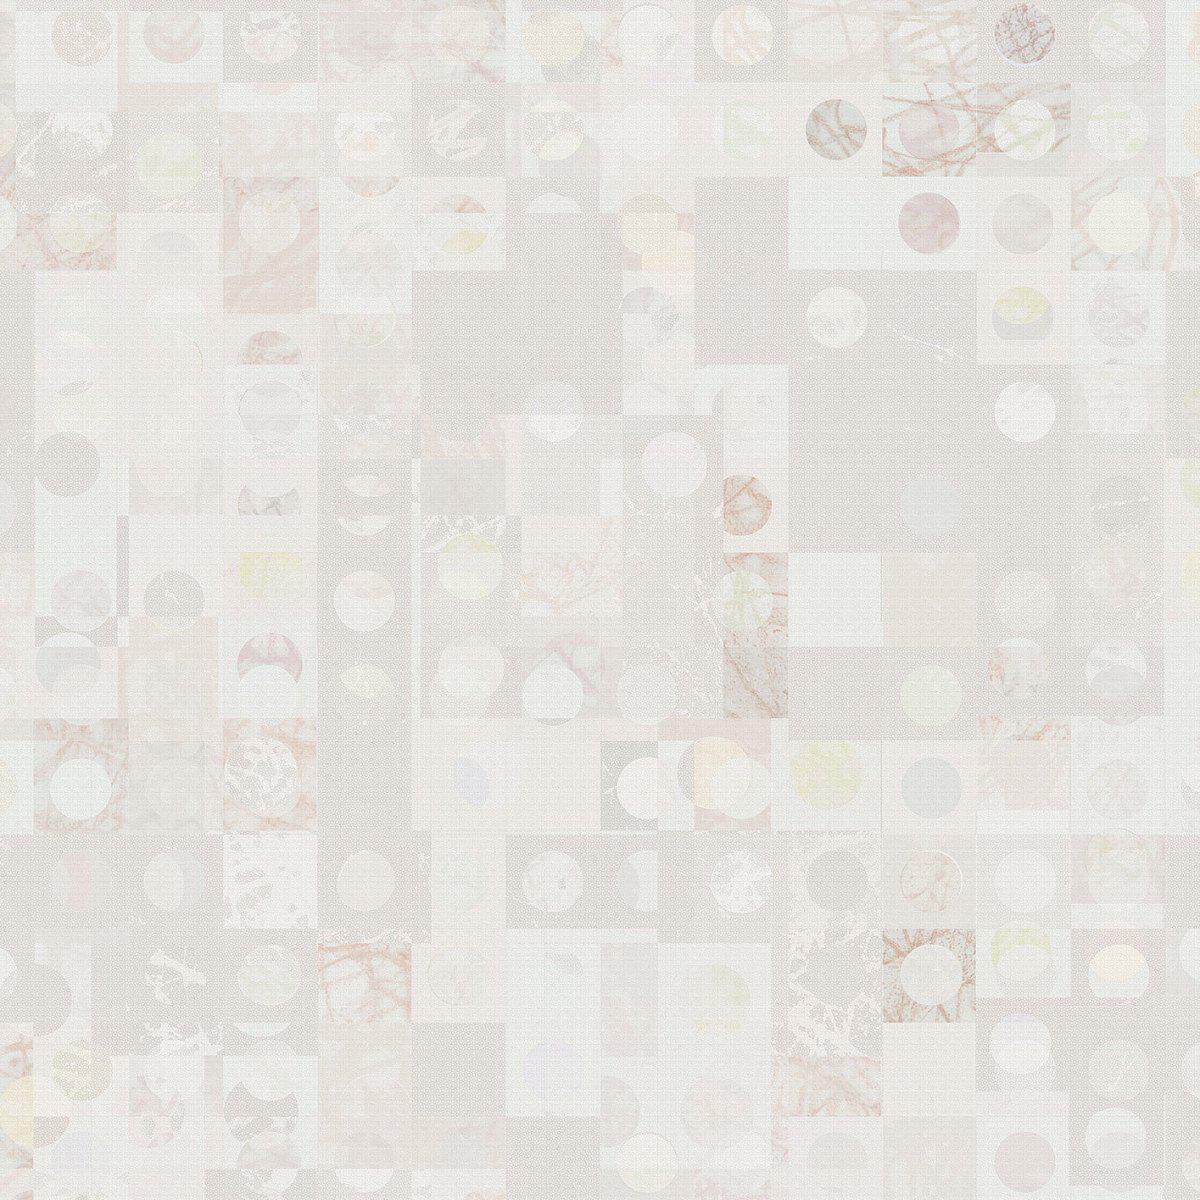 Minuetto-Digital Wallpaper-Tecnografica-Pink-58360-1